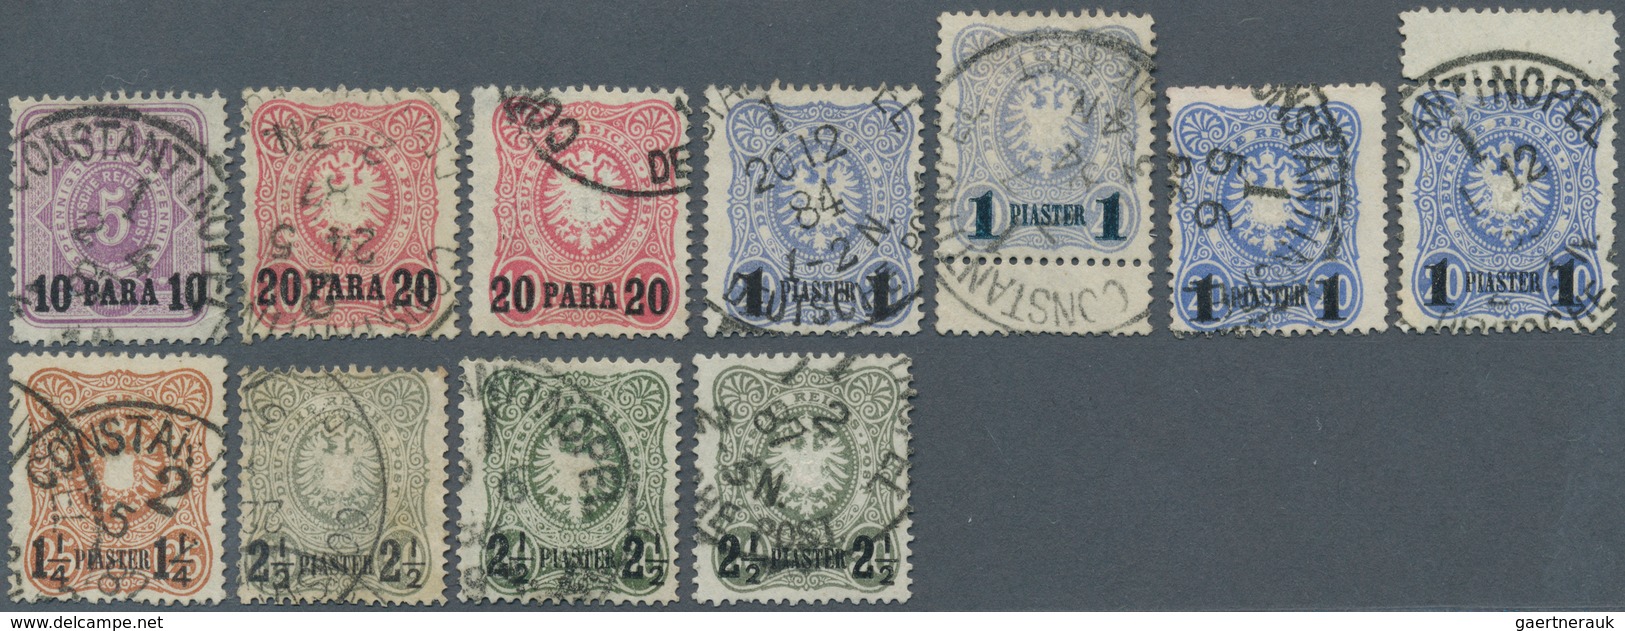 18505 Deutsche Post In Der Türkei: 1884, Freimarken Mit Aufdruck 10 PA -2 1/2 Pia Als Gestempelter Satz, D - Turkey (offices)